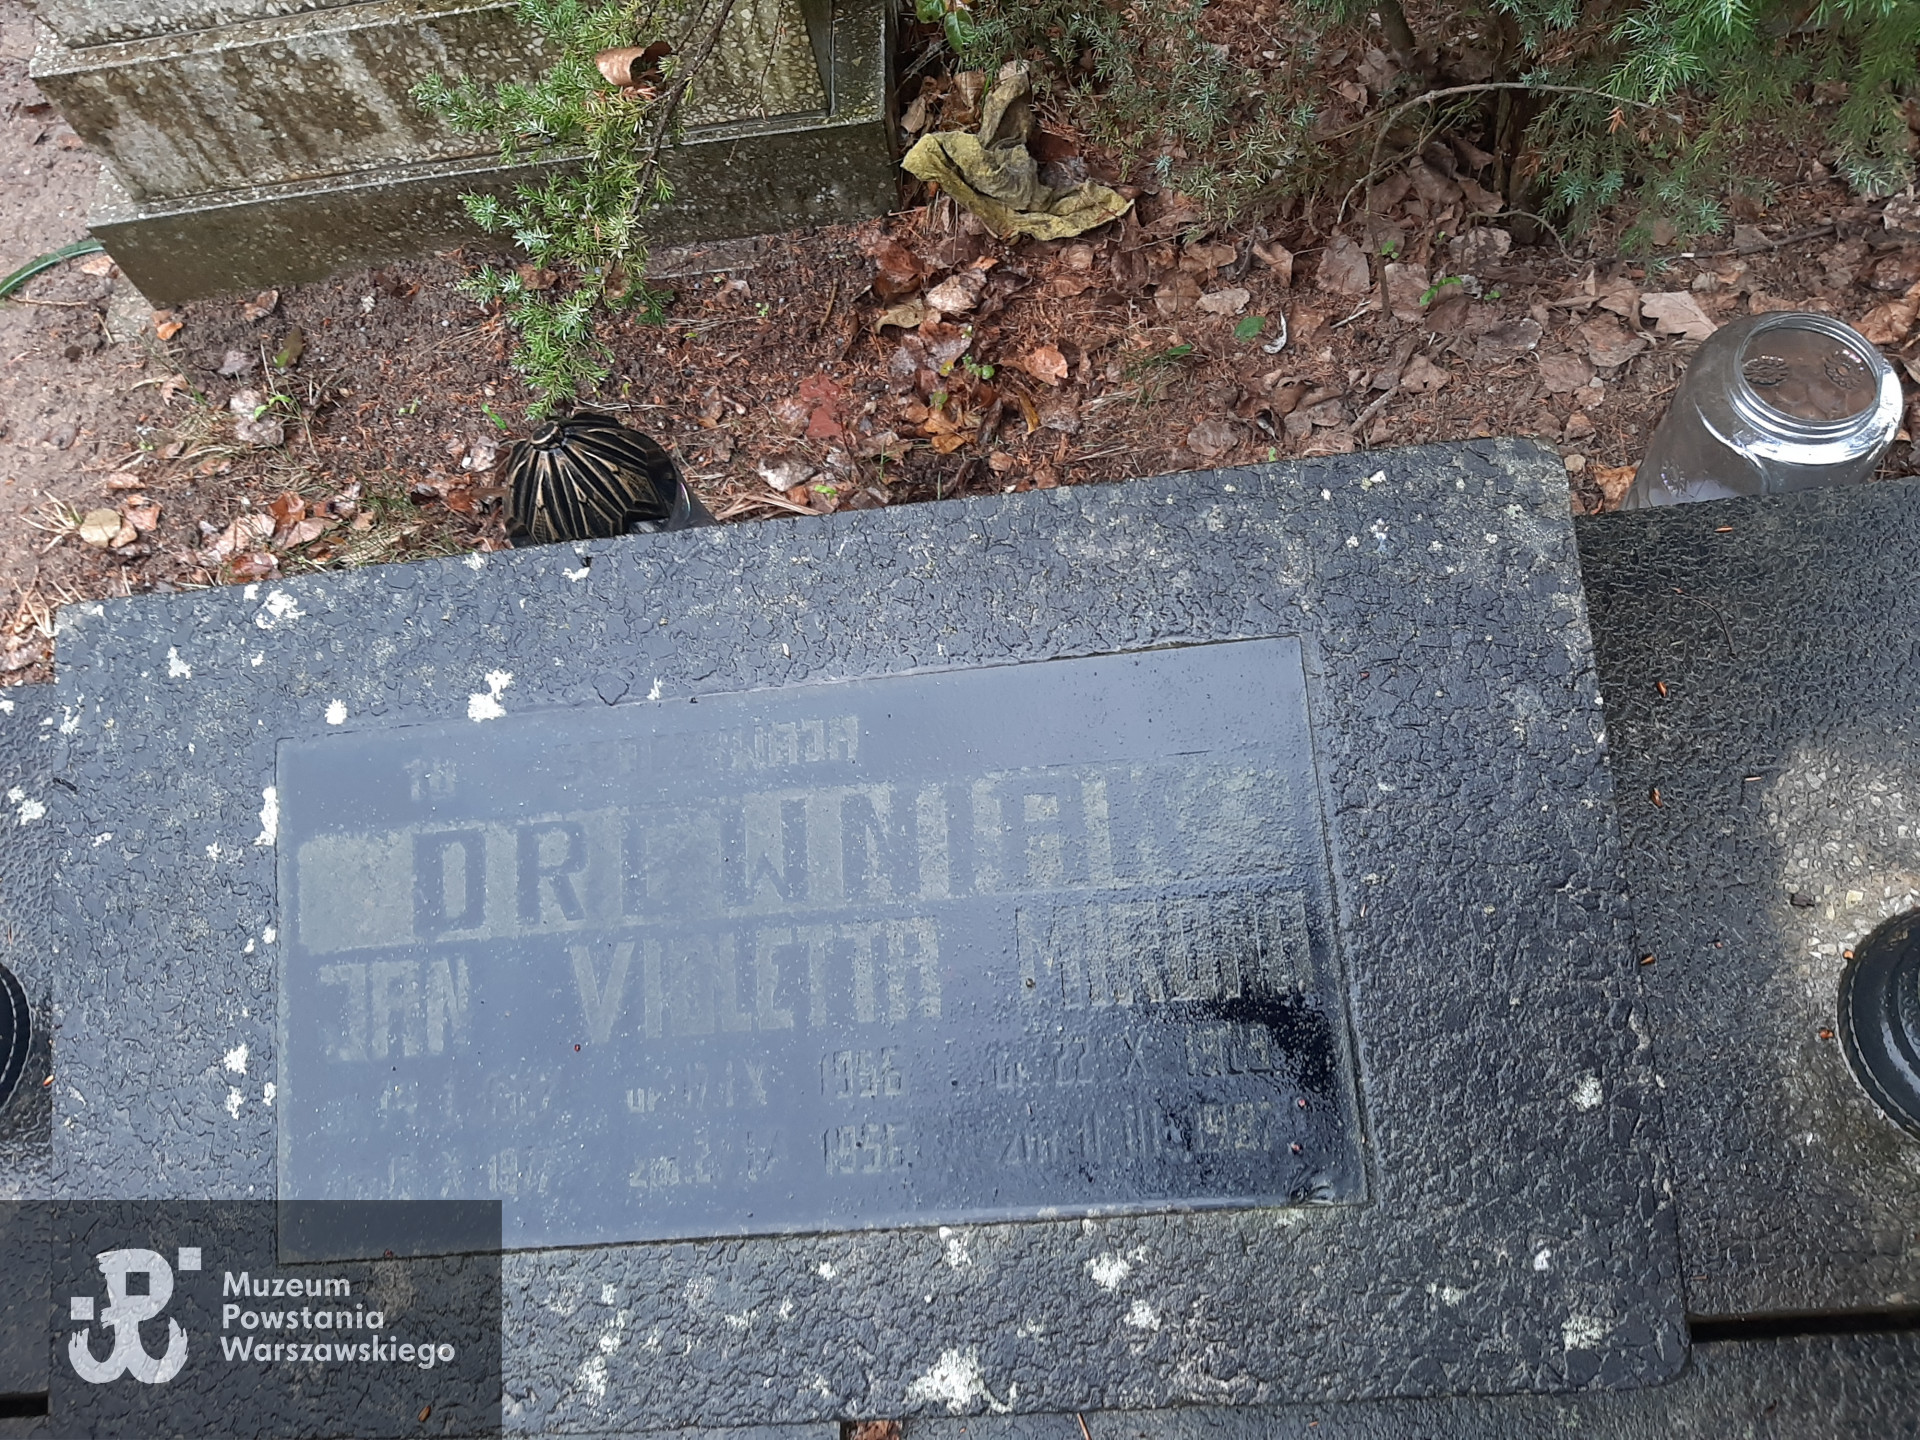 Cmentarz Komunalny w Gorzowie Wielkopolskim, sektor 19B, rząd 5, grób 3.  Fot. Karolina Kowalska, udostępniła autorka